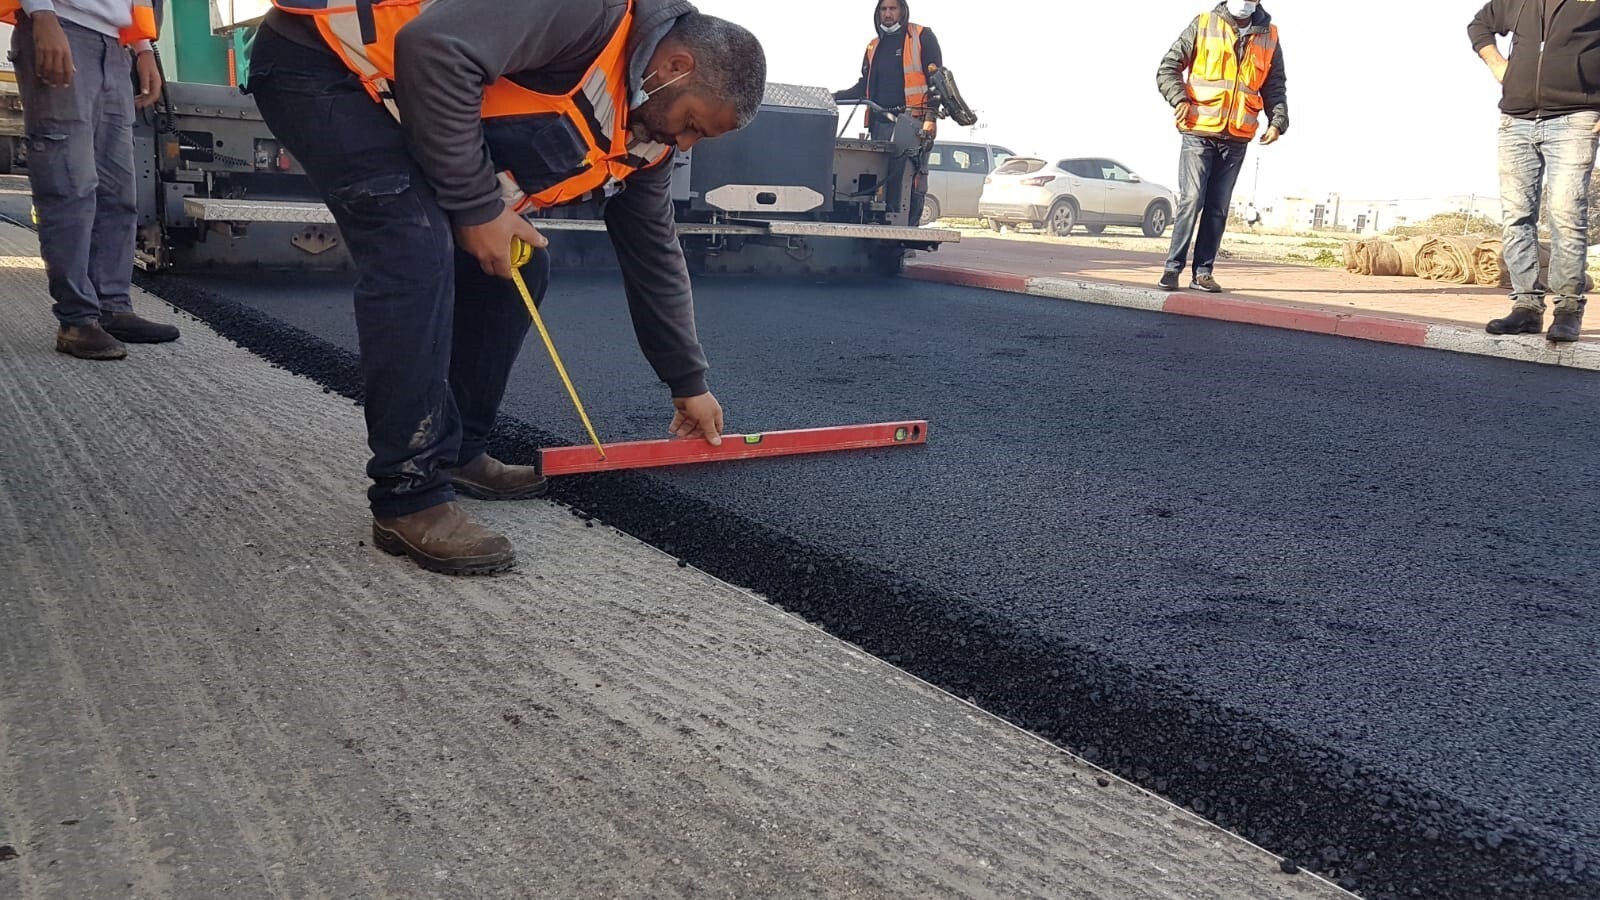 התקדמות בשלב העבודות על חידוש הכביש ברחוב הנביאים